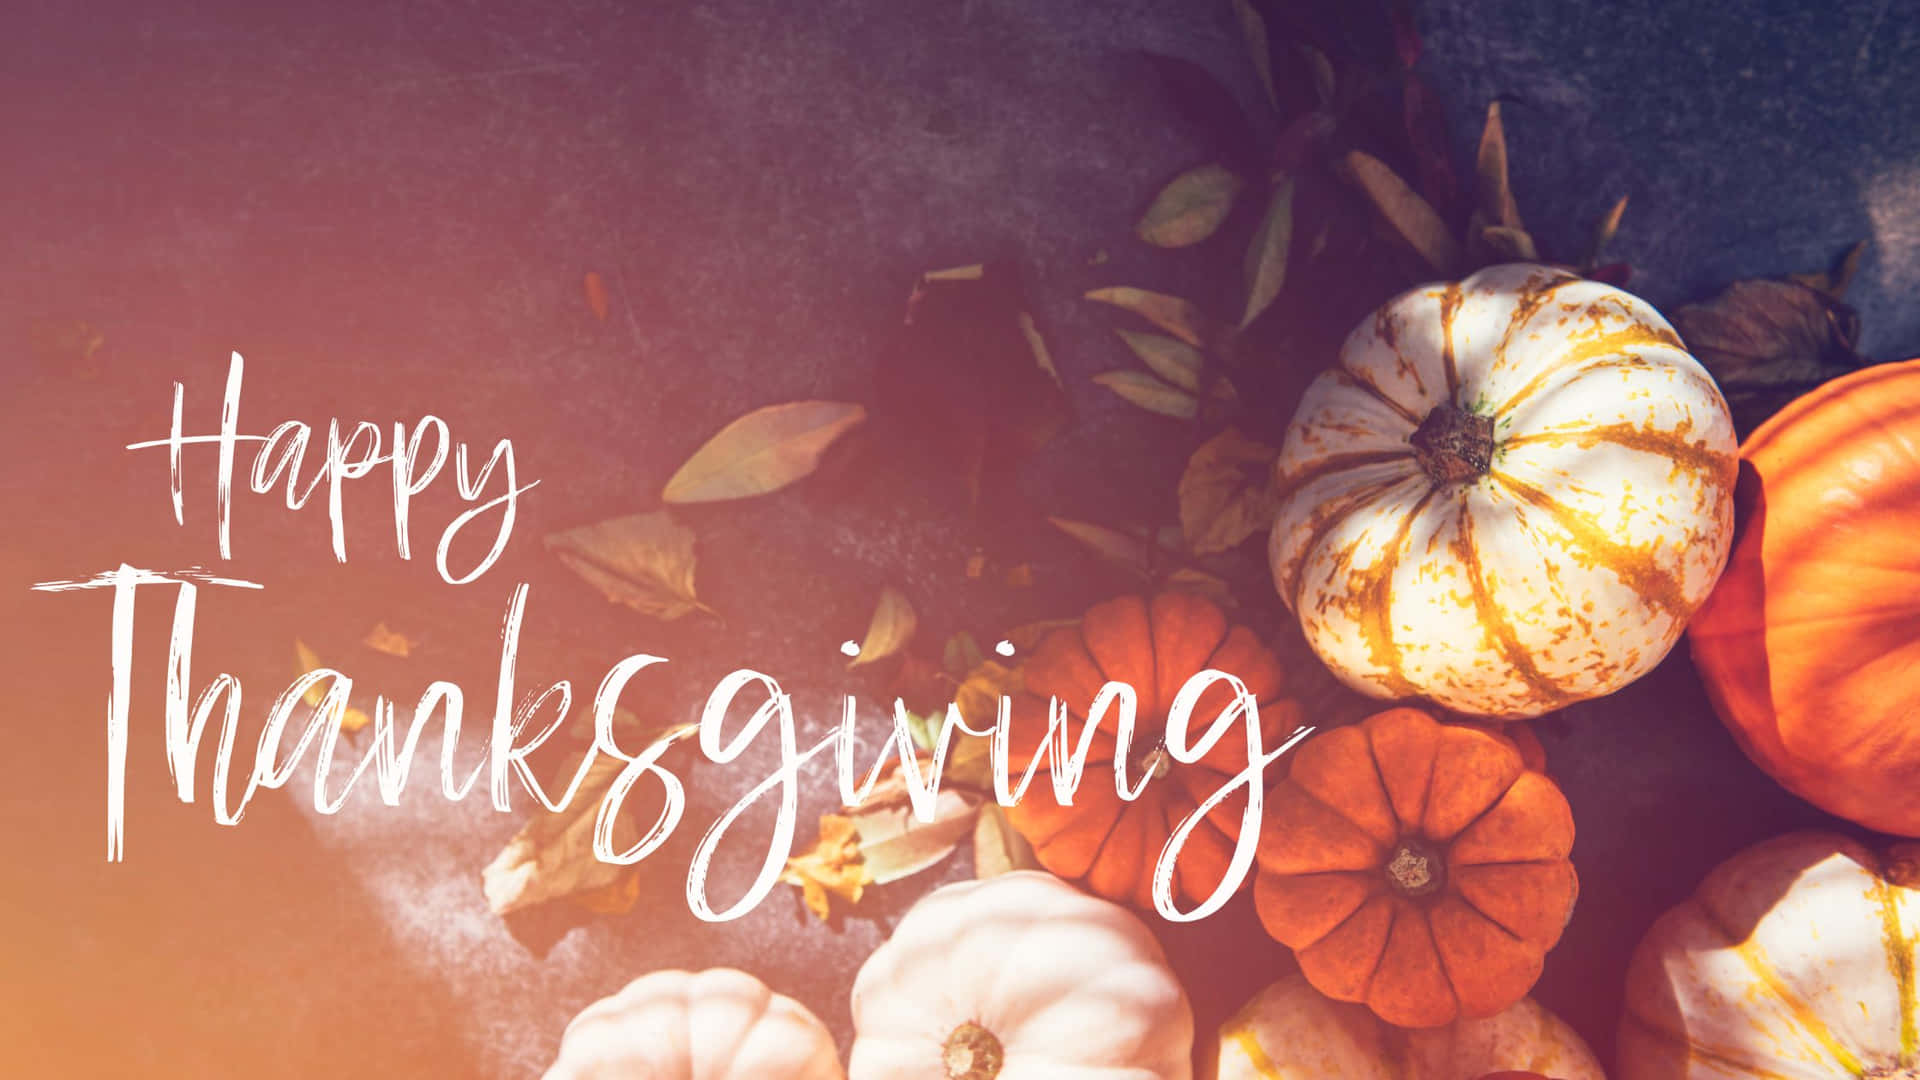 Feiernsie Thanksgiving Mit Dem Perfekten Desktop Wallpaper